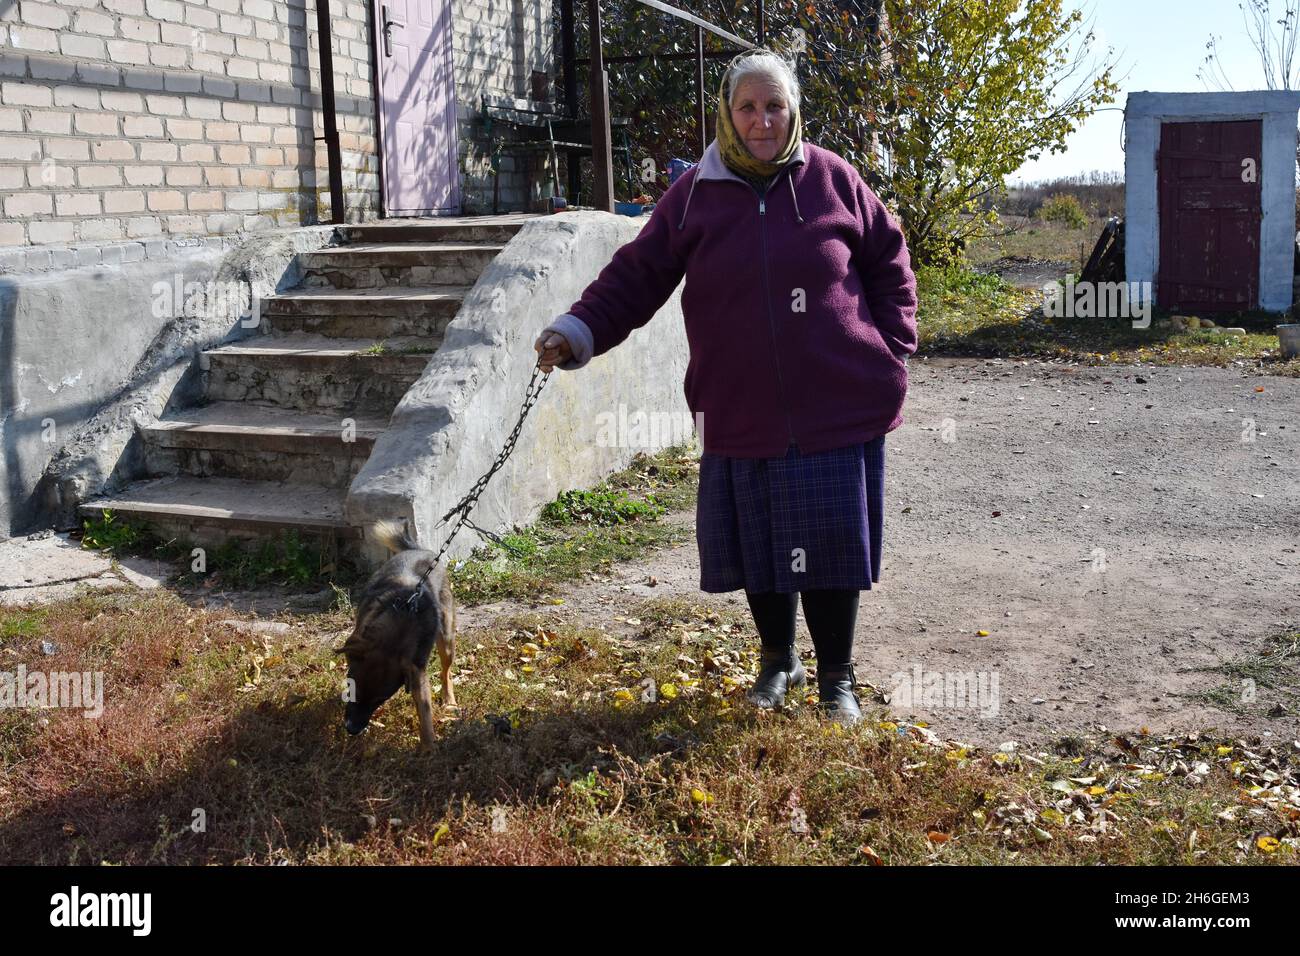 Una signora anziana si alza con il suo cane sul retro della sua casa nella periferia del villaggio di Verkhnotoretske. Verkhnotoretske è un insediamento ucraino di tipo urbano situato in prima linea nel distretto di Yasynuvata, nell'oblast di Donetsk dell'Ucraina orientale, a 24 km dal centro della città di Donetsk (DPR). Durante la guerra di Donbas, iniziata a metà aprile 2014, la linea di separazione tra le parti in guerra è stata situata nelle vicinanze dell'insediamento. Il villaggio era una zona grigia fino alla fine del 2017 anno. Attualmente Verkhnotoretske è un territorio ucraino. Il conflitto ha portato Foto Stock